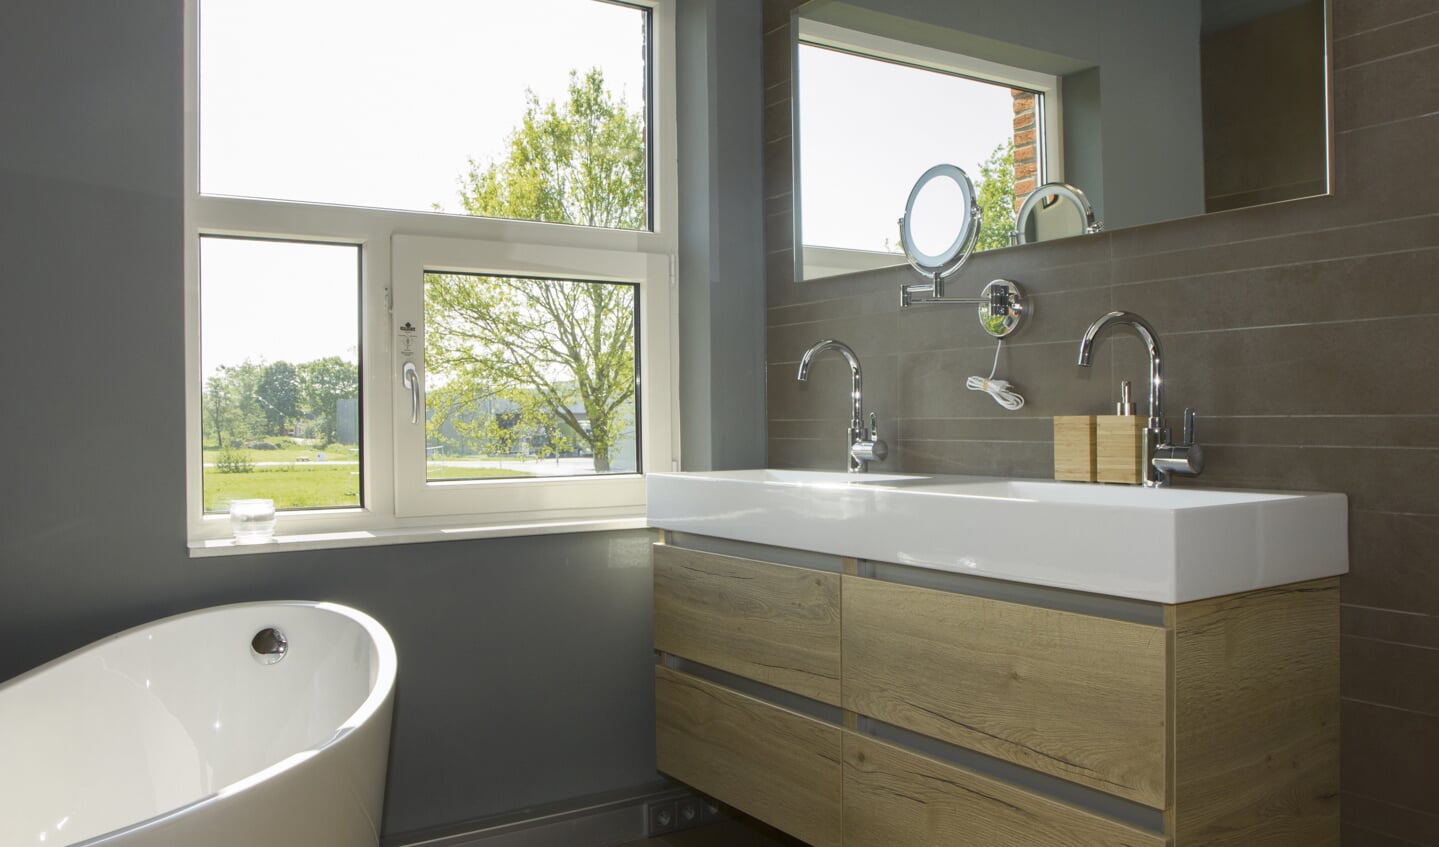 Door het uitgebreide en diverse aanbod van Badkamerwarenhuis is iedere stijl badkamer te realiseren. Badkamerwarenhuis beschikt altijd over de nieuwste trends.